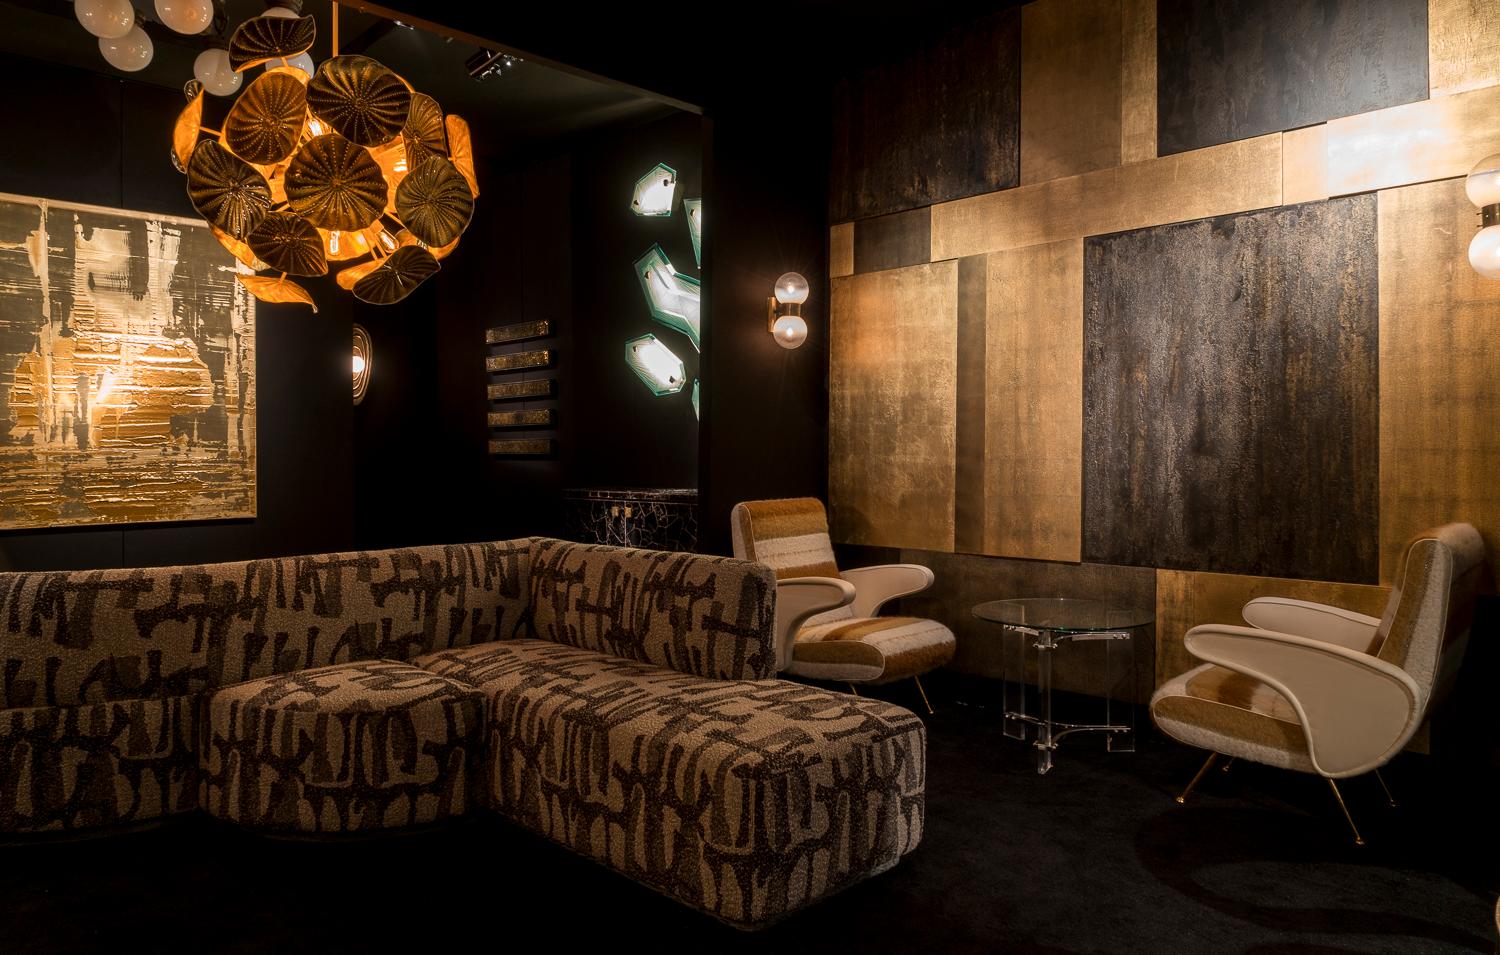 Das Sofa Vincent wurde vom Charles Burnand Design Studio für die Charles Burnand Collector's Lounge im Salon Art + Design, 2018, entworfen. Es ist sowohl vom Art déco als auch von der Memphis-Bewegung inspiriert. Das Design umfasst asymmetrisches